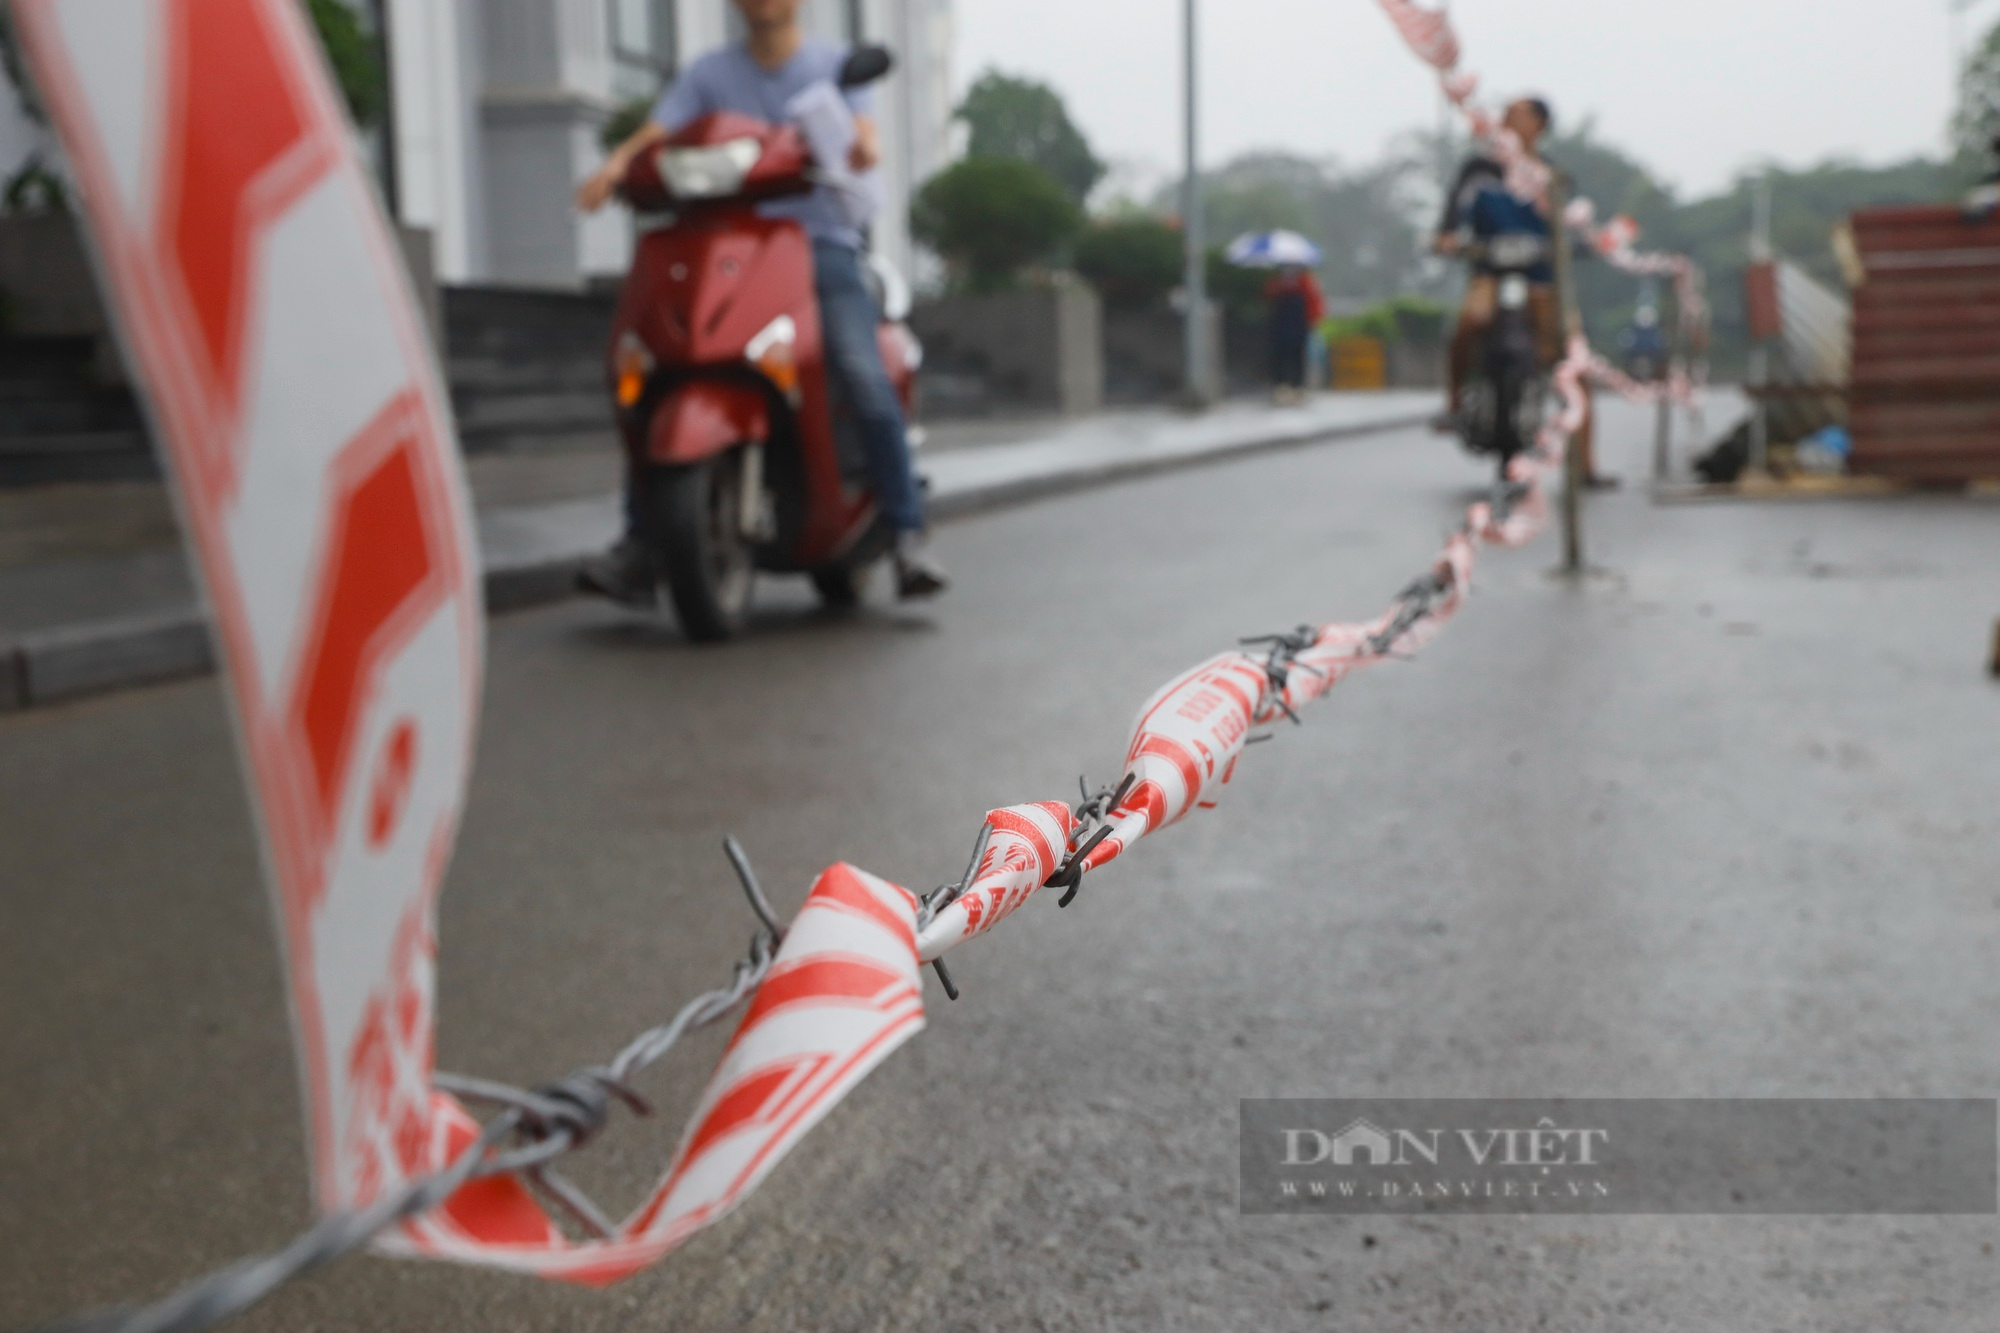 Đóng cột kiên cố, dựng hàng rào dây thép gai giữa đường tại chung cư nghìn dân sinh sống ở Hà Nội - Ảnh 3.